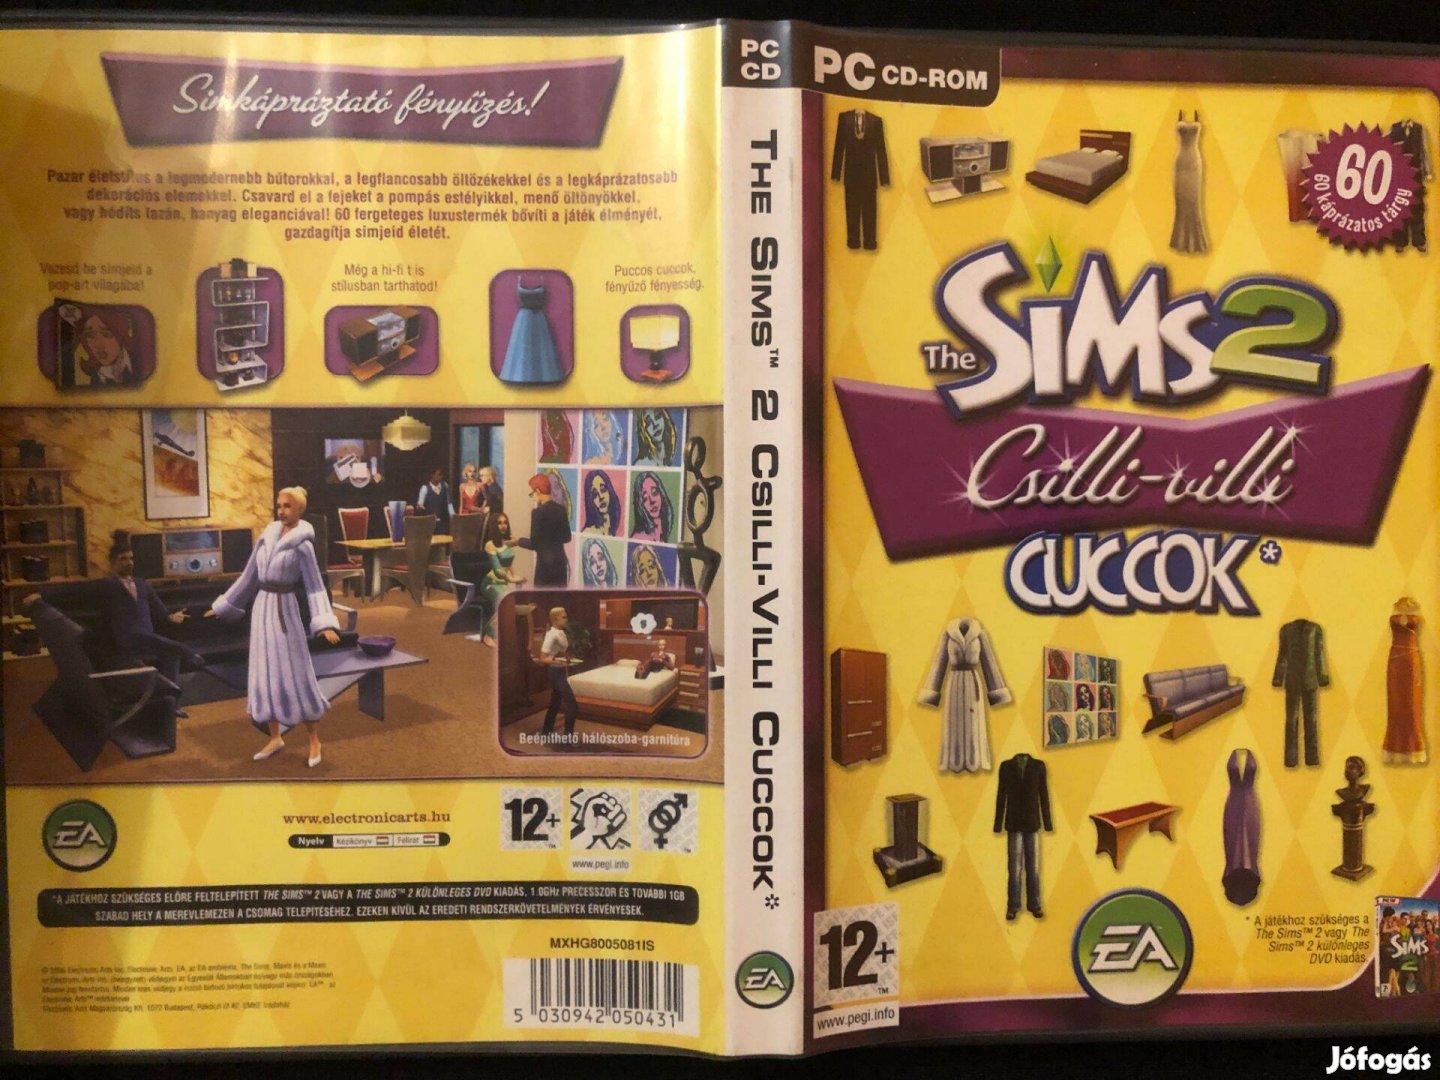 The Sims 2 Csilli-villi cuccok PC játék (karcmentes)